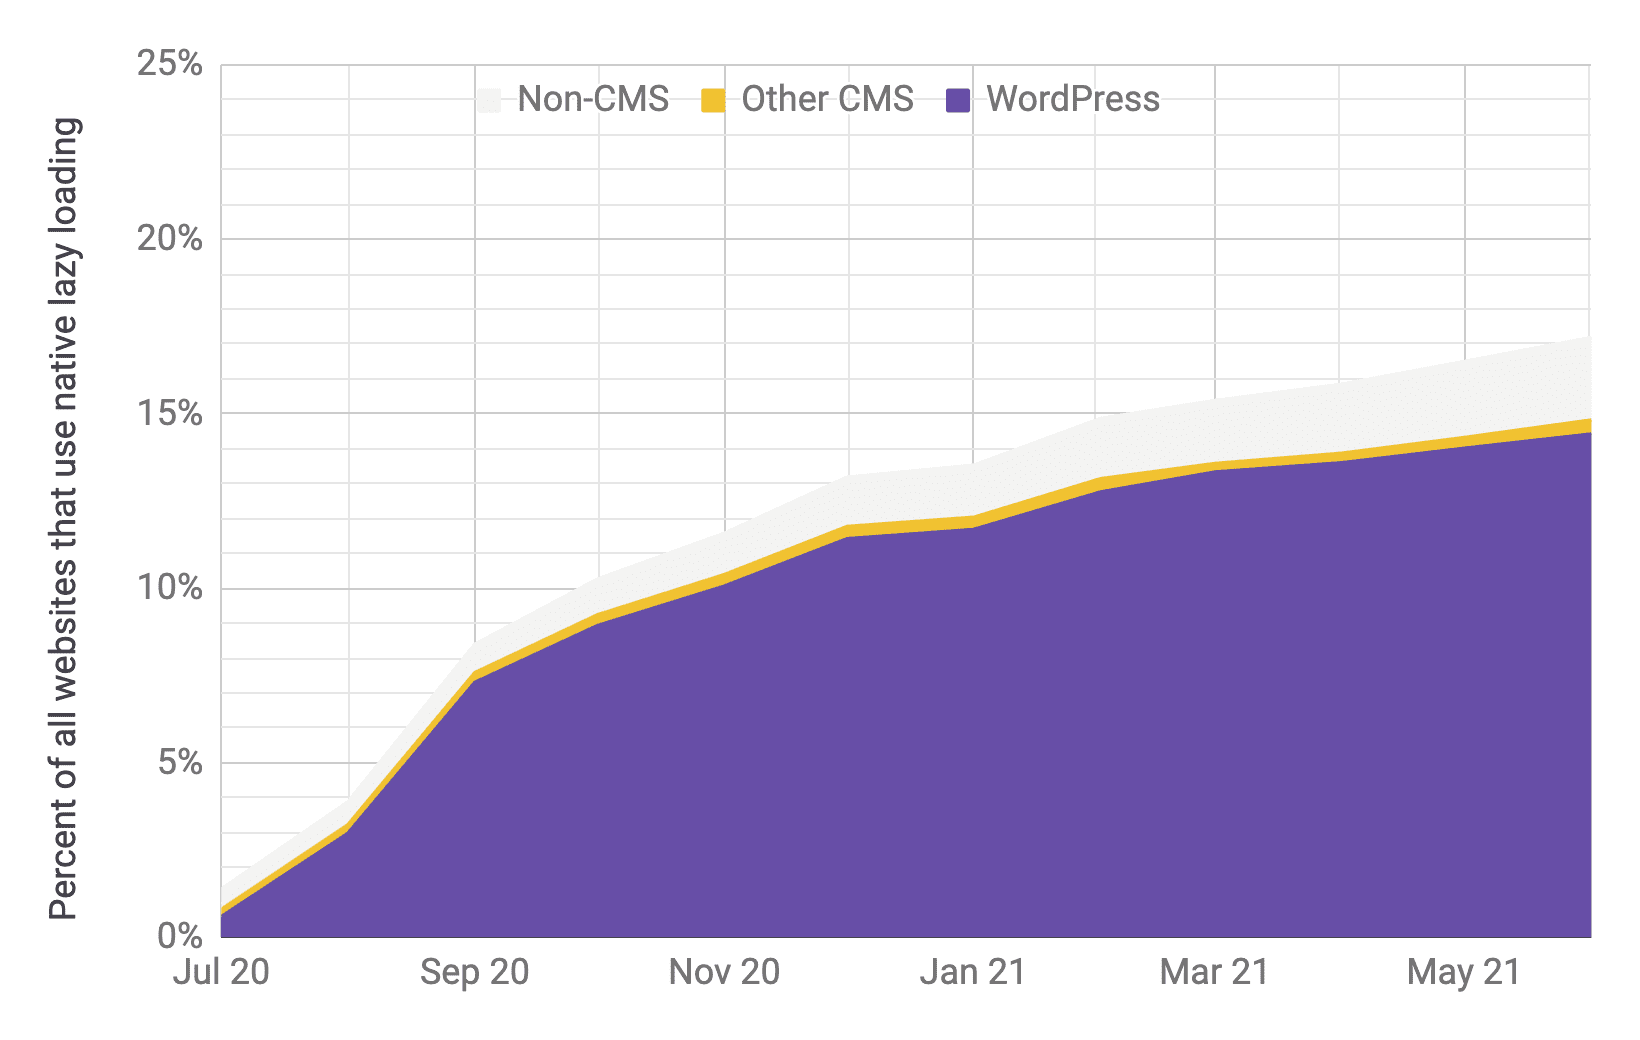 Gráfico de série temporal sobre adoção do carregamento lento. O WordPress é a principal opção em comparação com outros CMSs e não CMSs, com proporções semelhantes ao gráfico anterior. A adoção total aumentou rapidamente de 1% para 17% de julho de 2020 a junho de 2021.